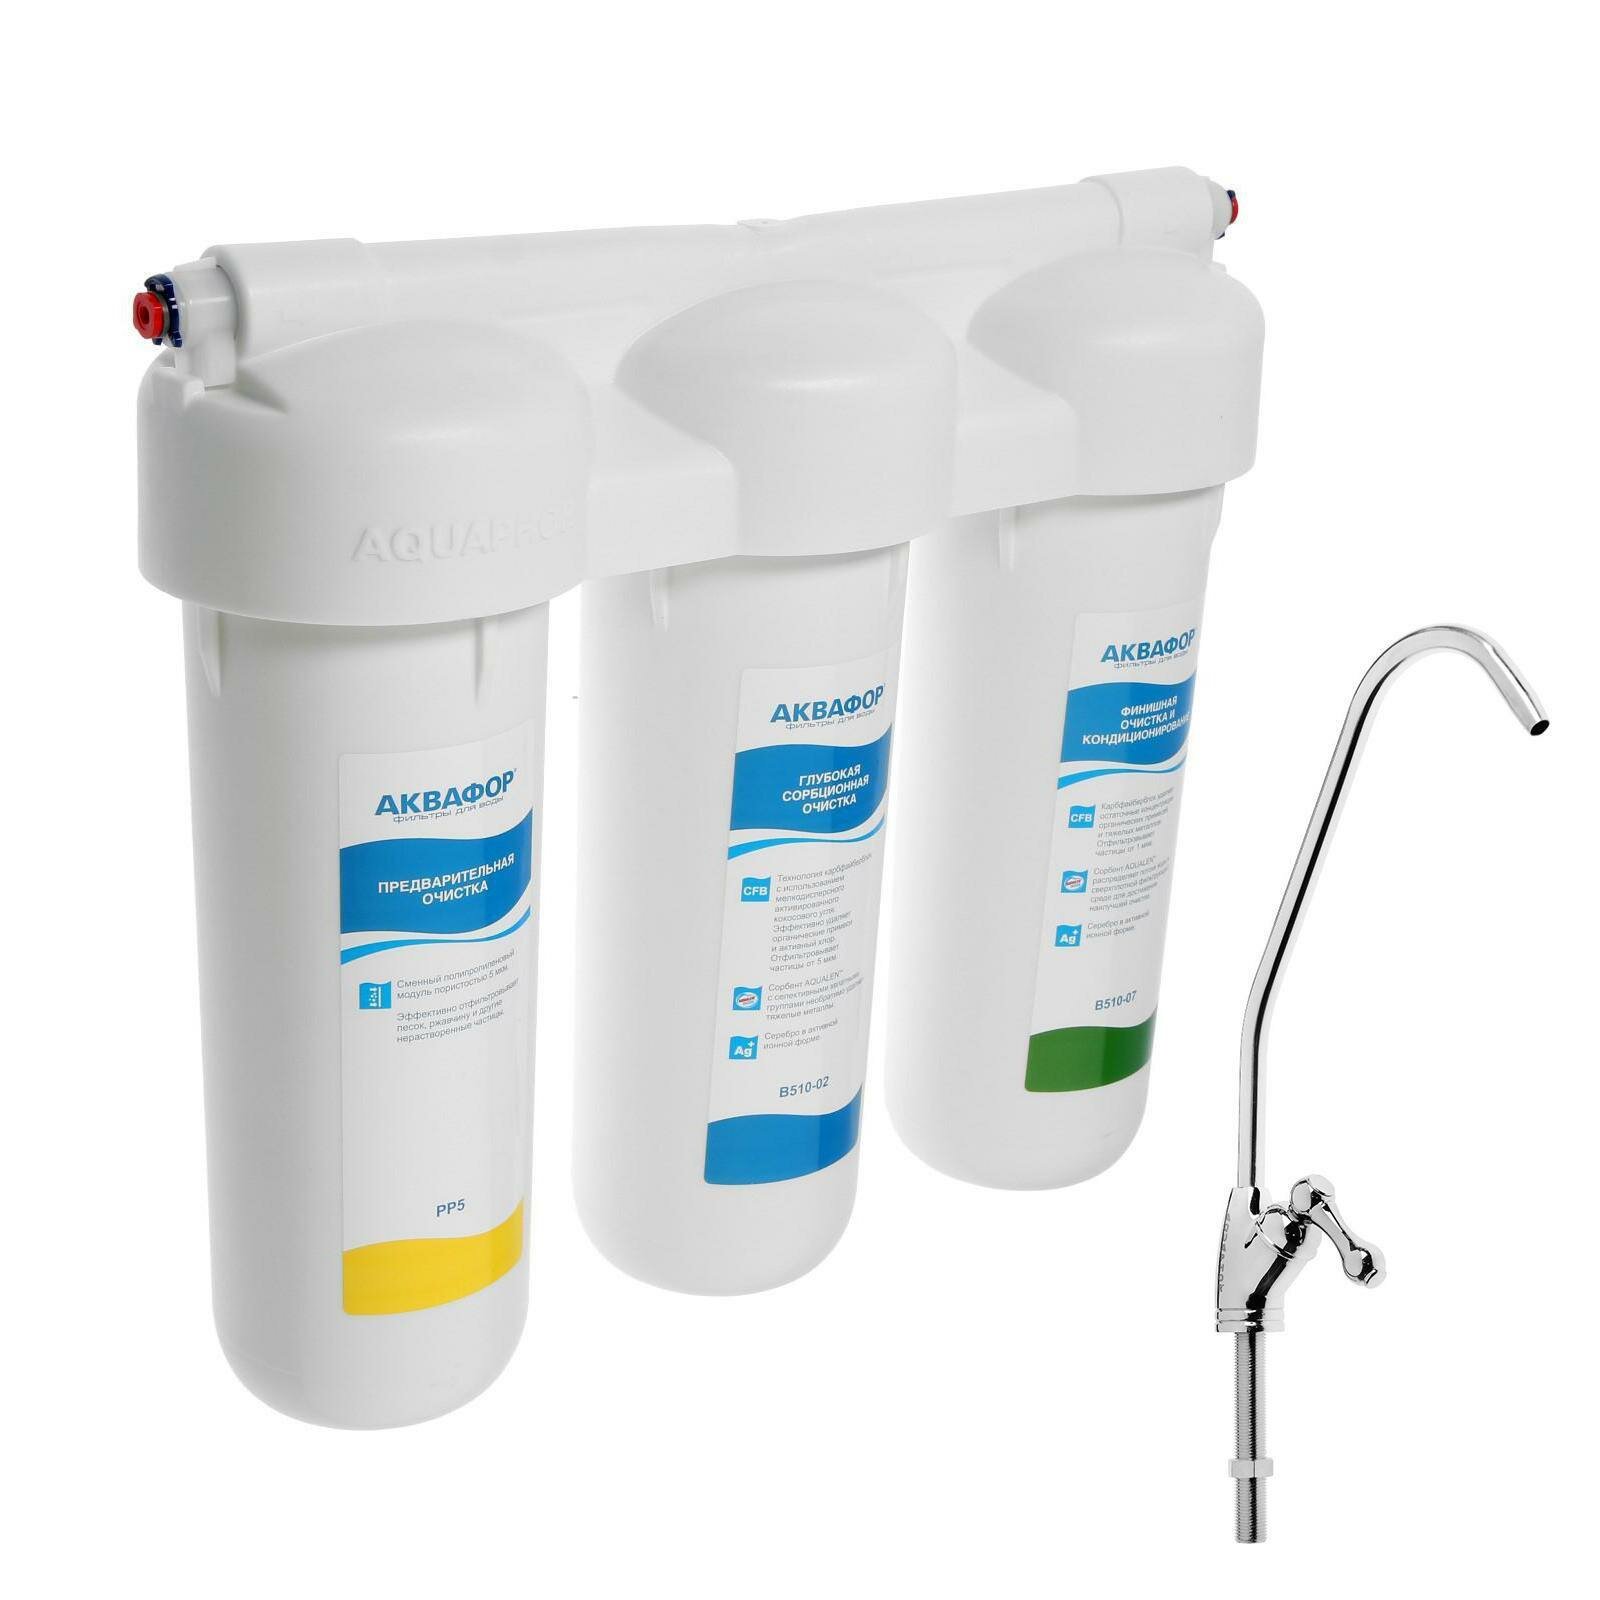 Система для фильтрации воды Трио Норма, РР5/В510-02/В510-07, 3-х ступенчатый, с краном, 2 л/мин